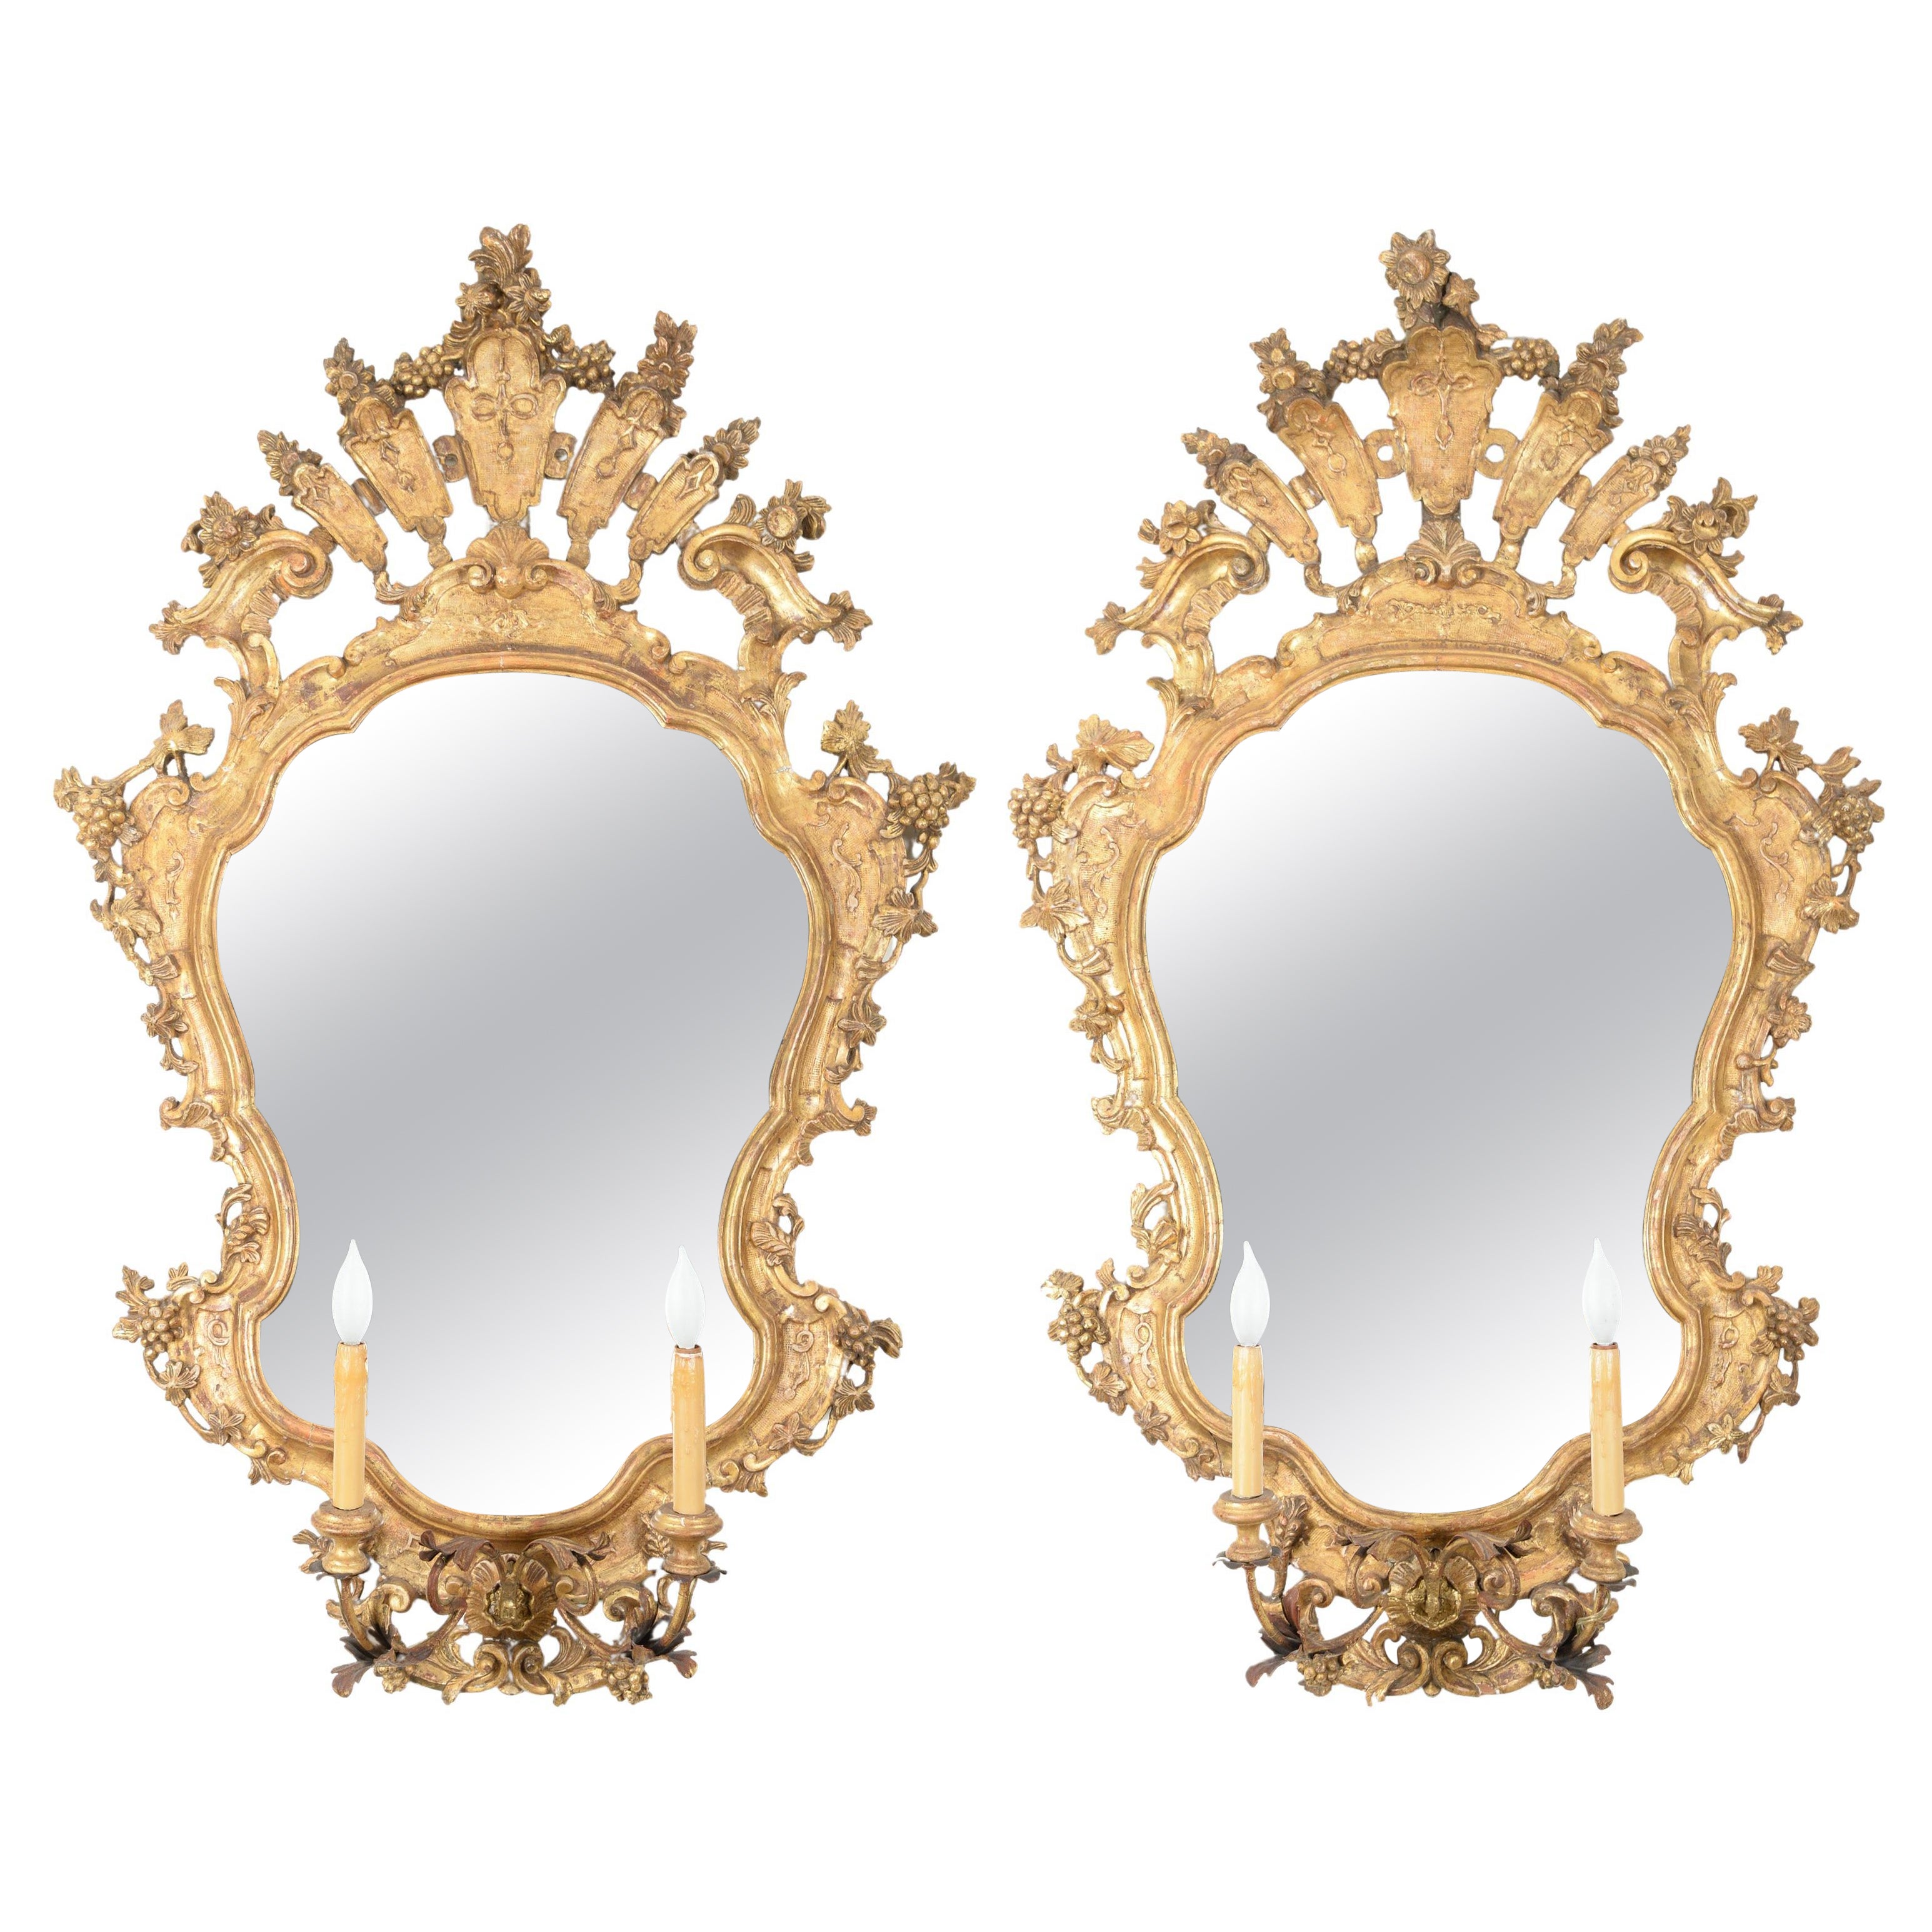 Paire de grands miroirs italiens rococo en bois doré (Girandoles)